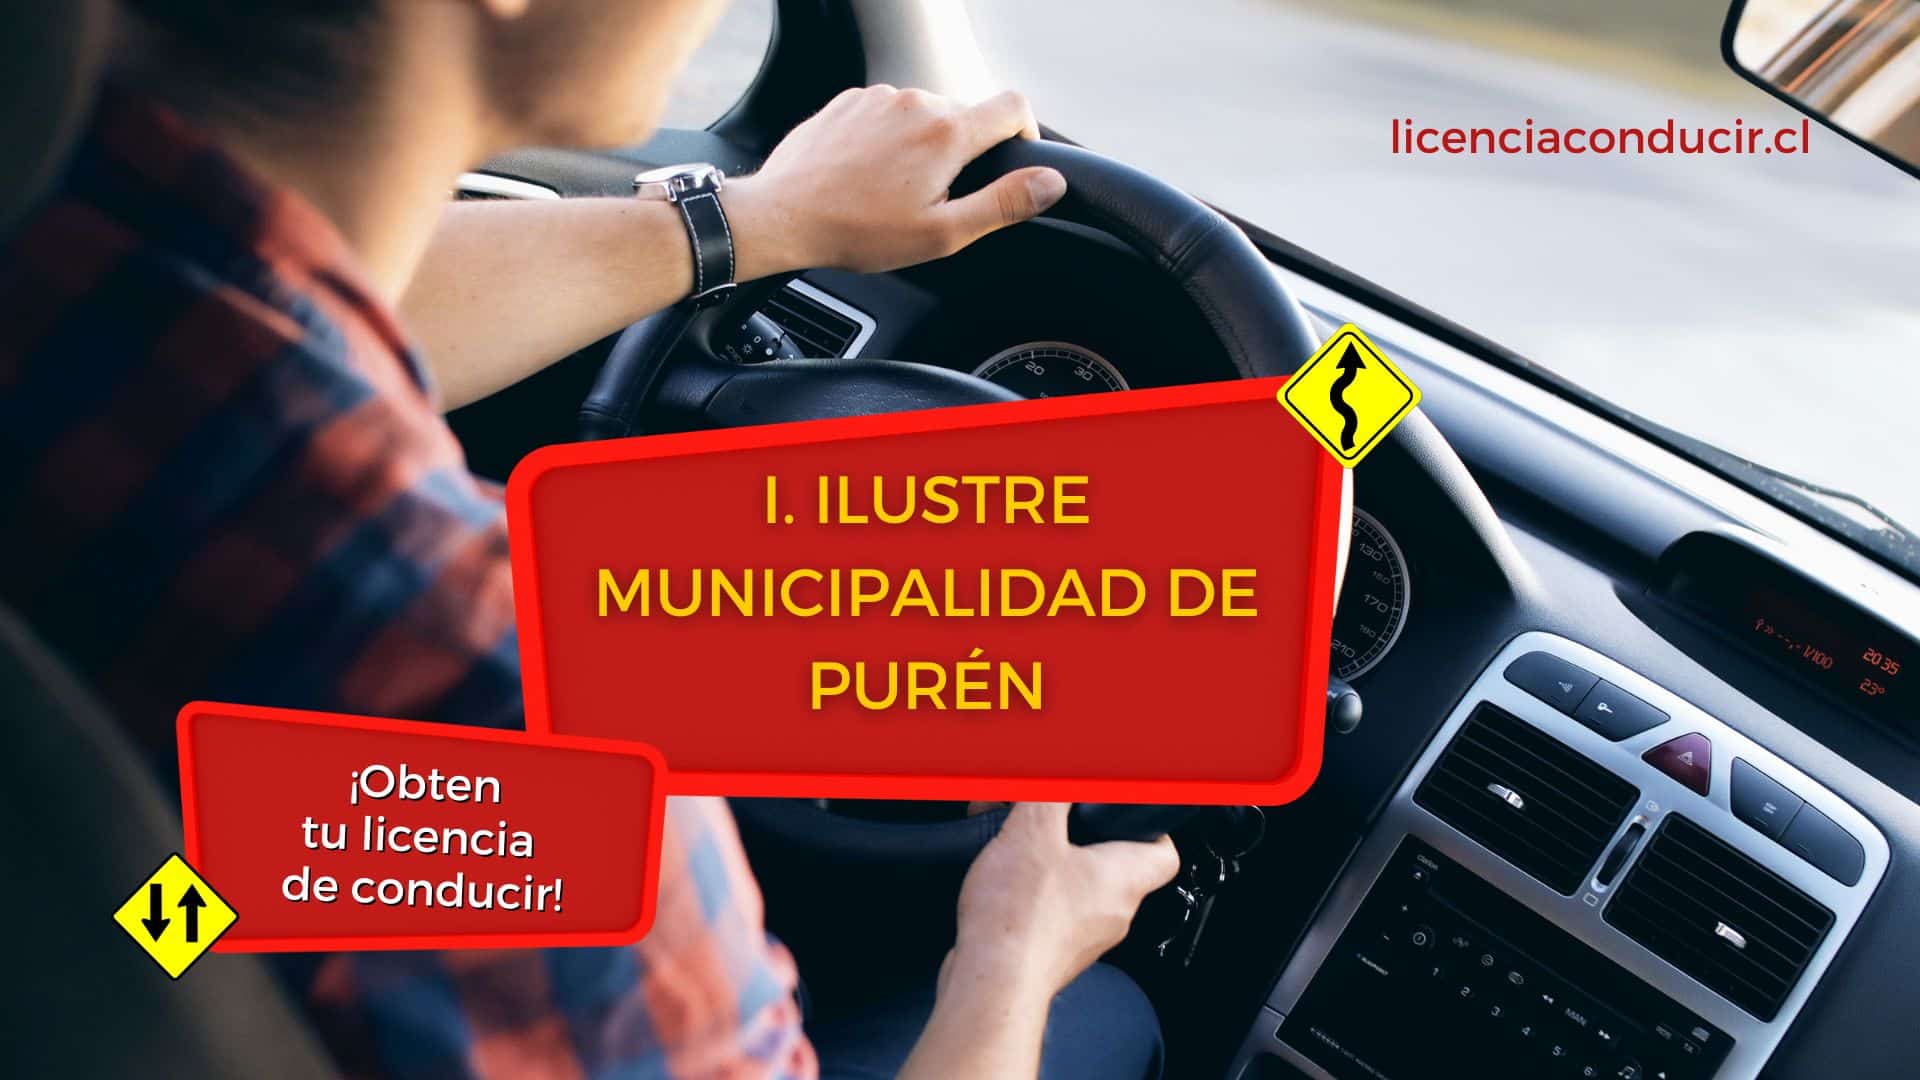 Renovar licencia conducir en purén